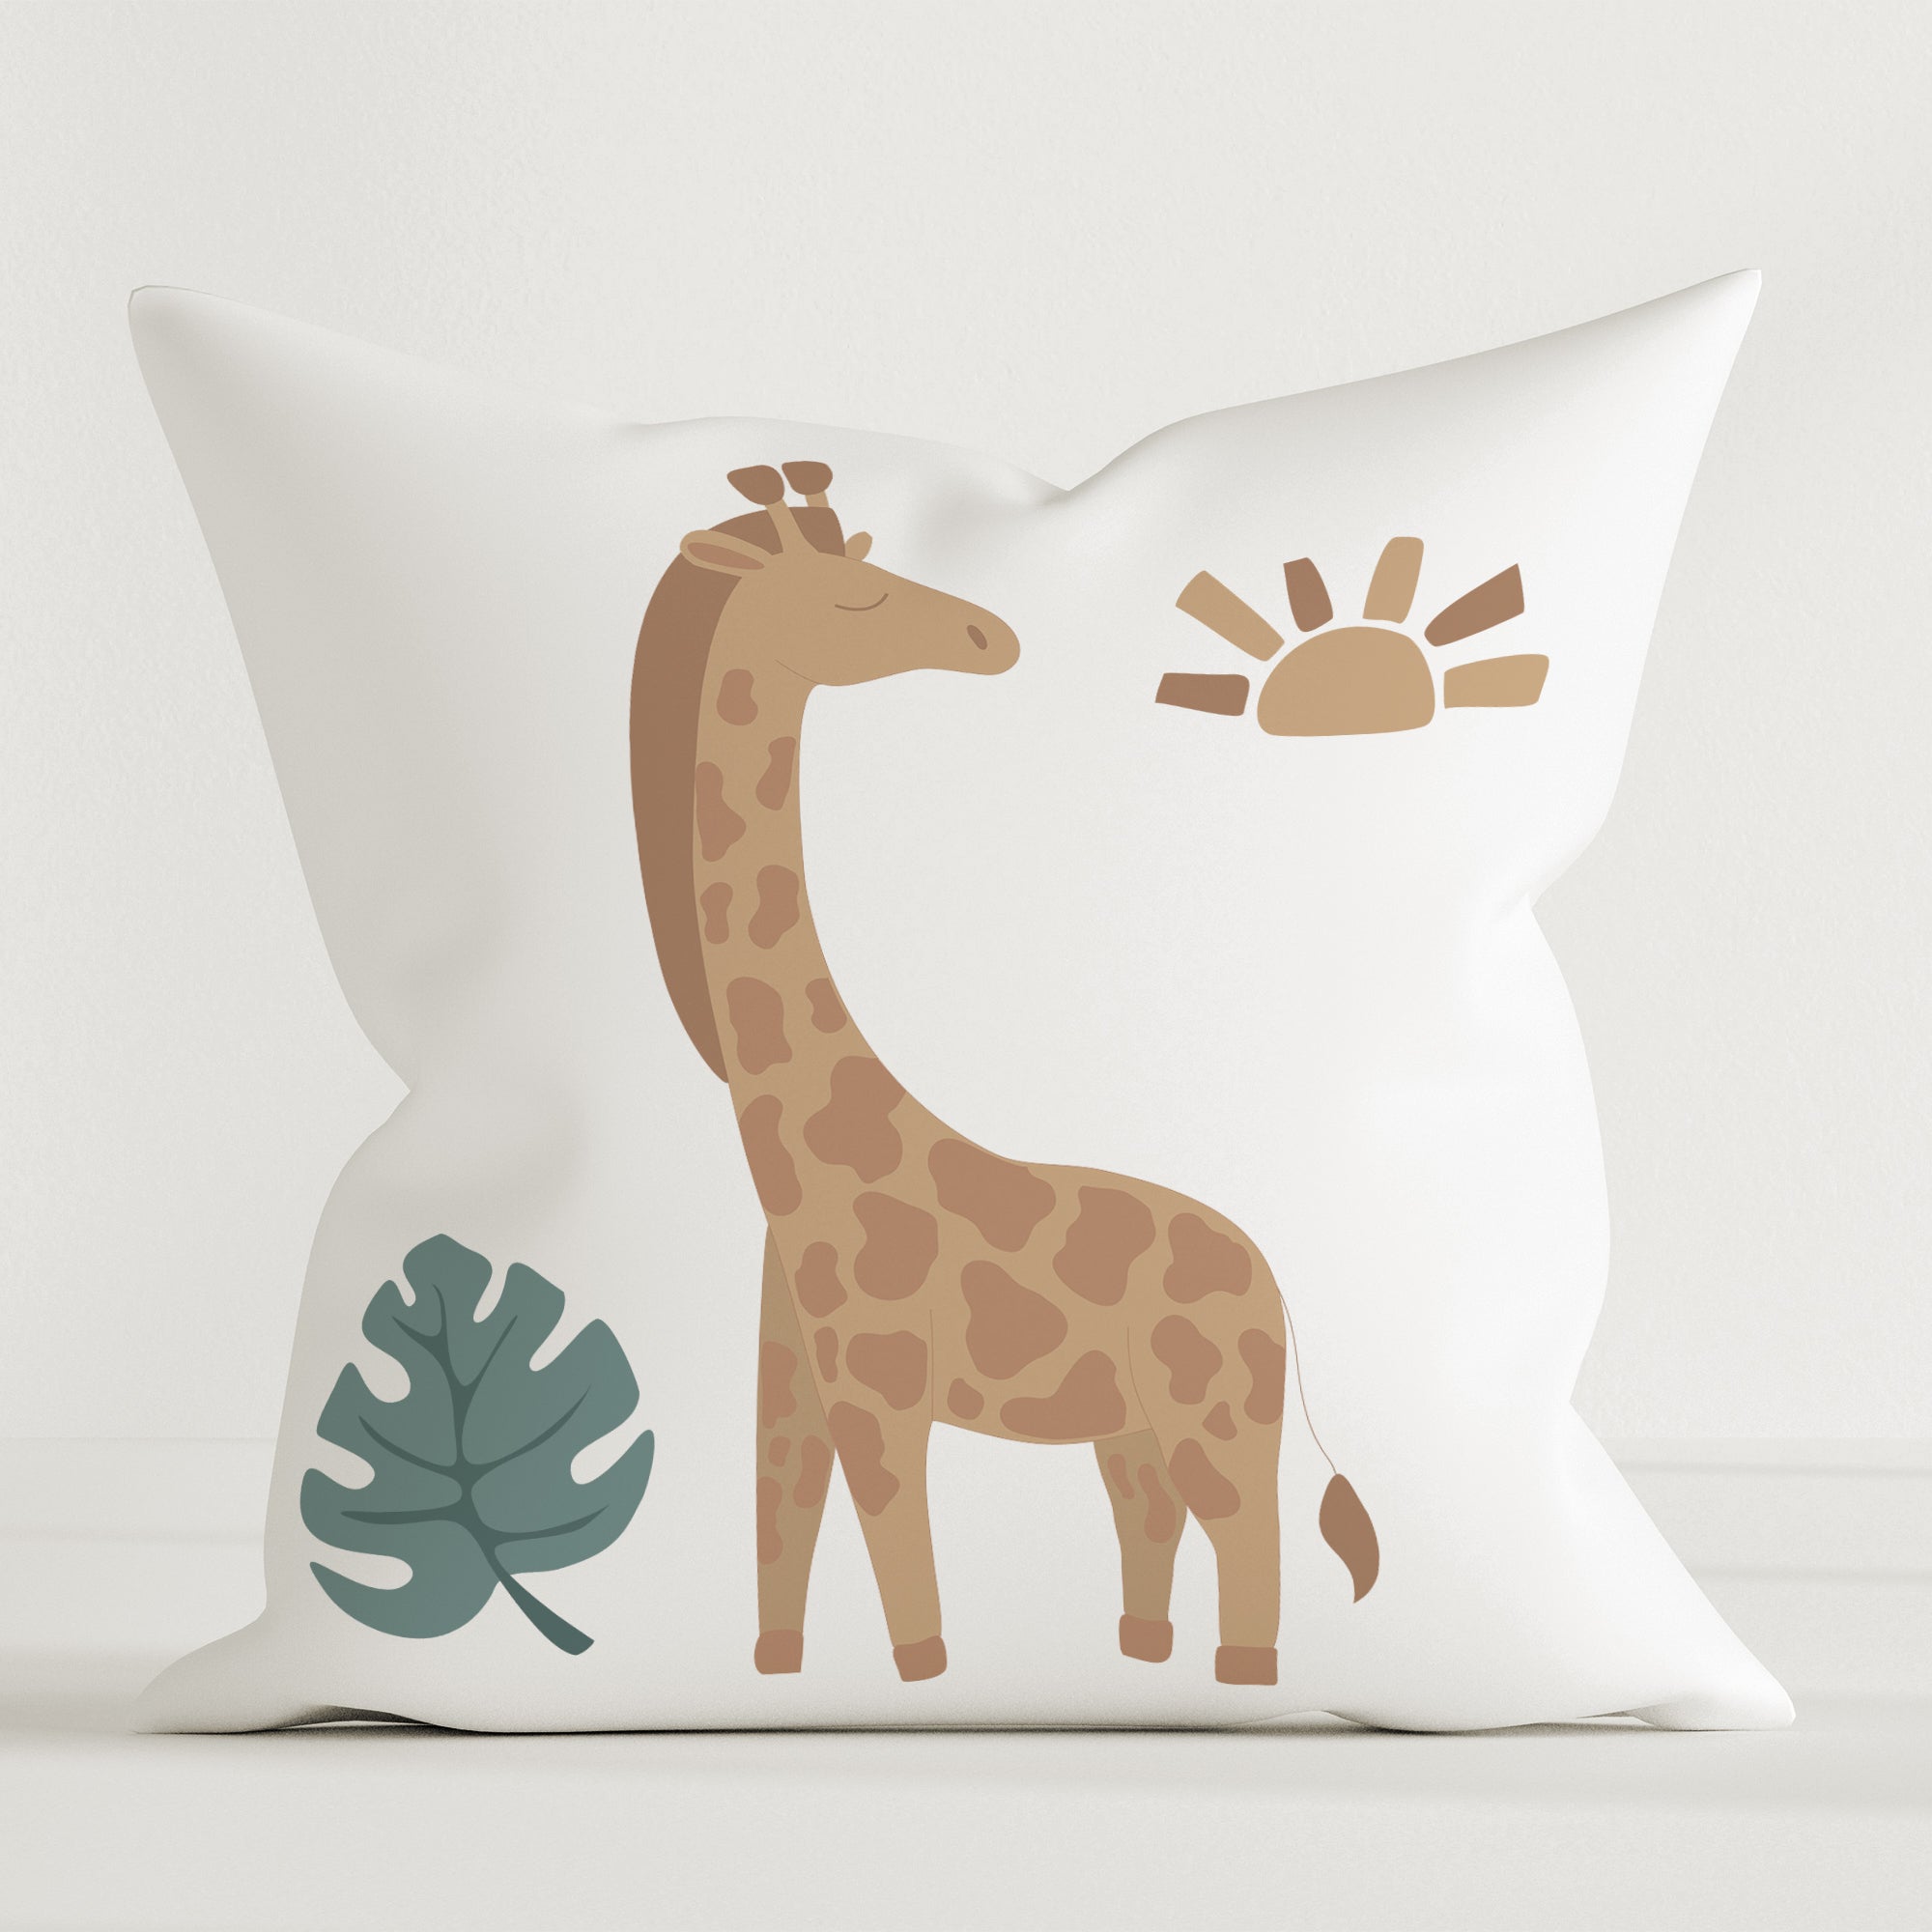 "Jungle giraffe" children's decorative cushion